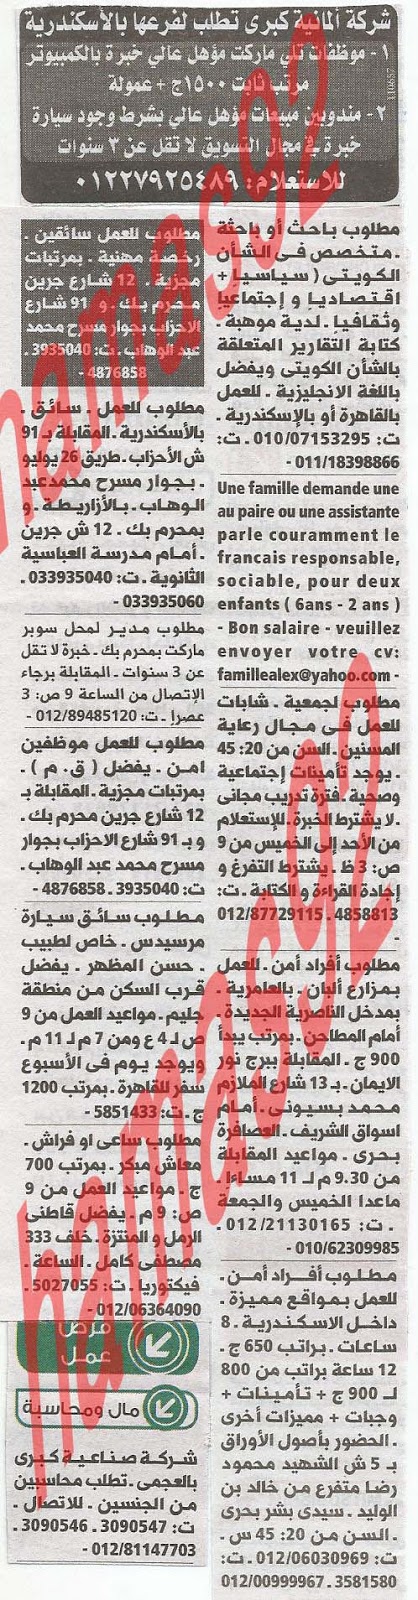 وظائف خالية فى جريدة الوسيط الاسكندرية الاثنين 22-07-2013 %D9%88+%D8%B3+%D8%B3+3